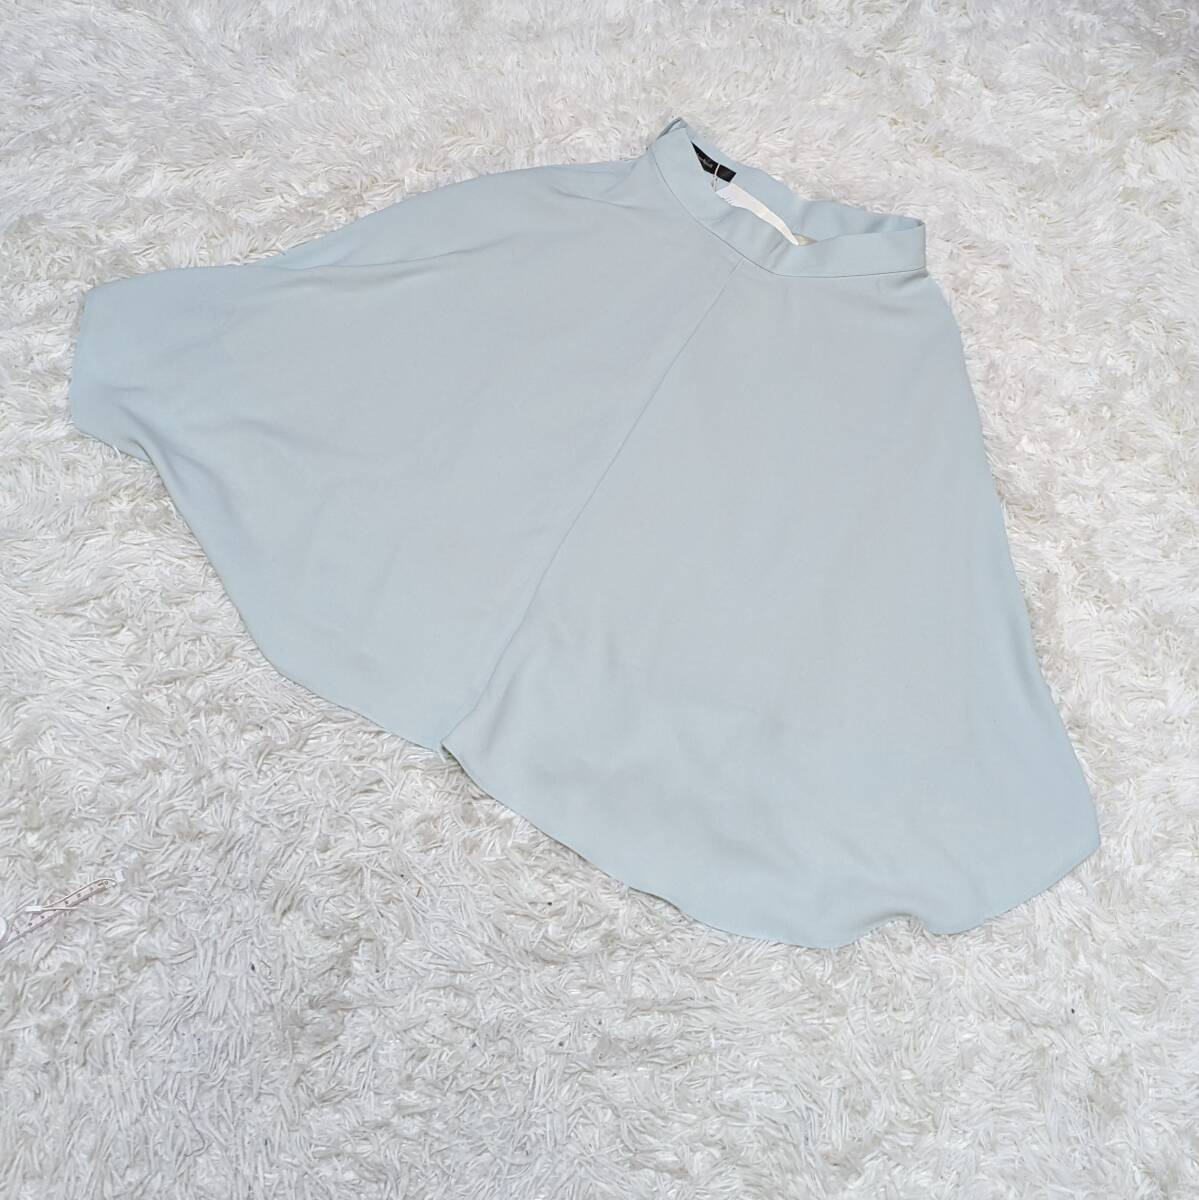 【BANNER BARRETT】バナーバレット セール品 スカート 36サイズ 女性 レディース ミント色【YTLS-117】_画像1